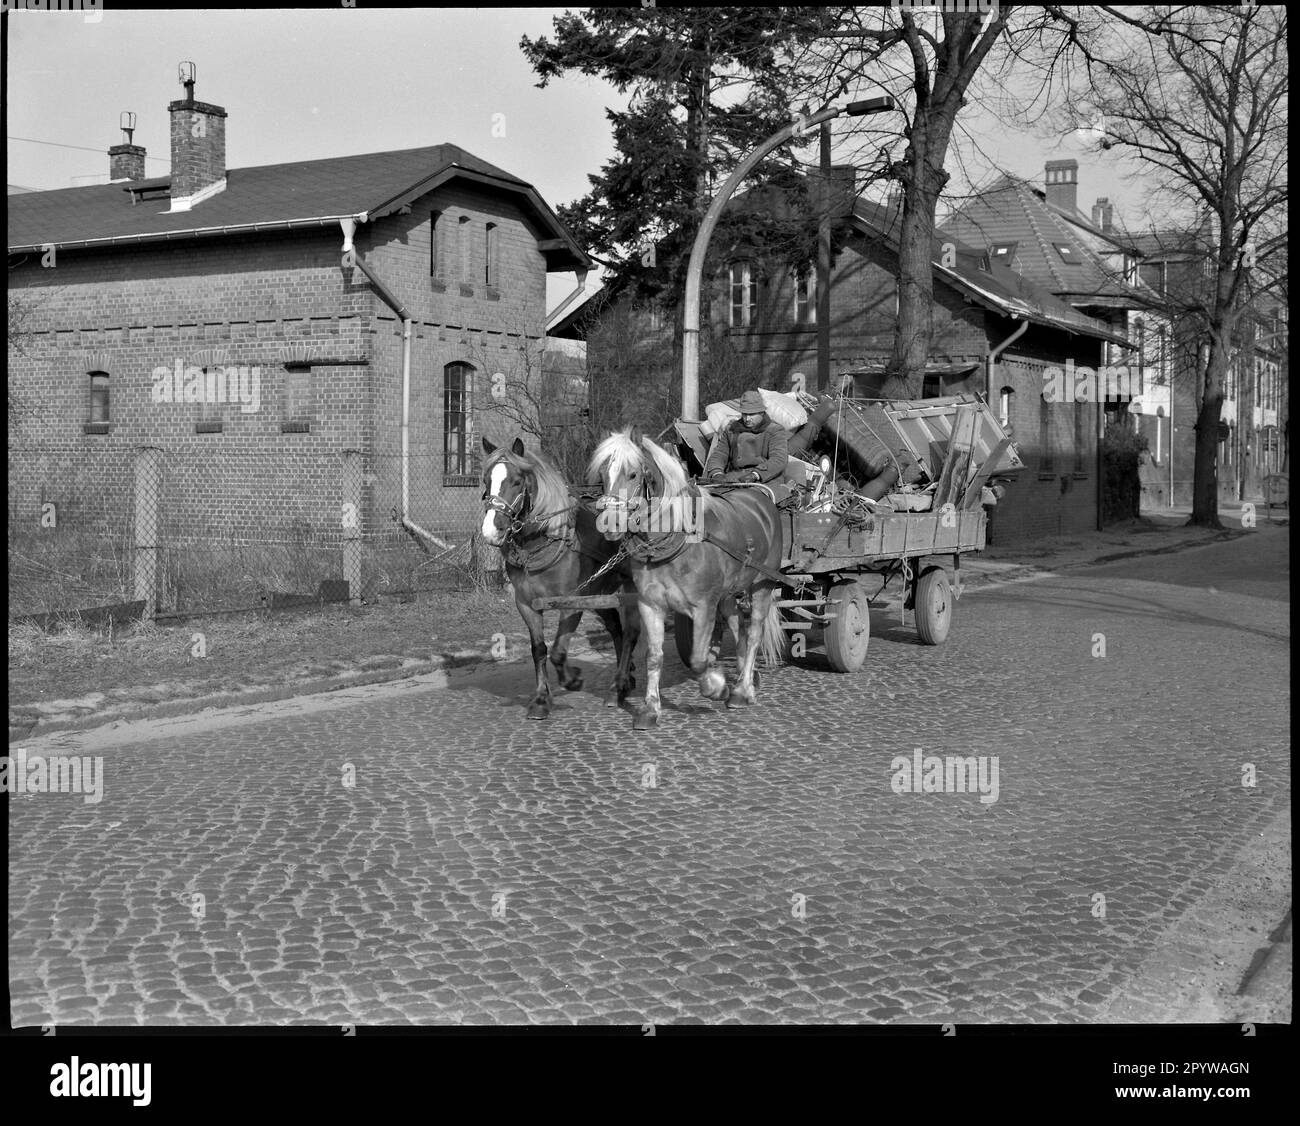 Wildau (quartier de Dahme-Spreewald, Brandebourg). Scène de rue avec une calèche tirée par des chevaux. Photo, 1994. Banque D'Images